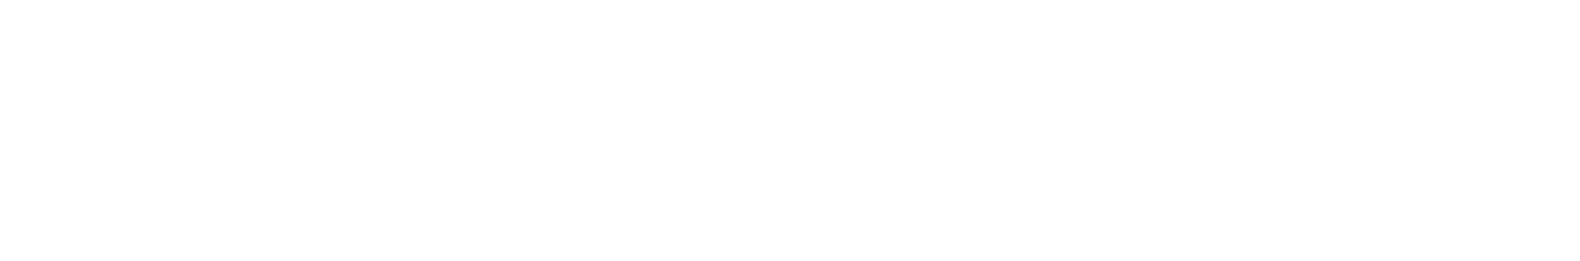 Corticeira Amorim Logo groß für dunkle Hintergründe (transparentes PNG)